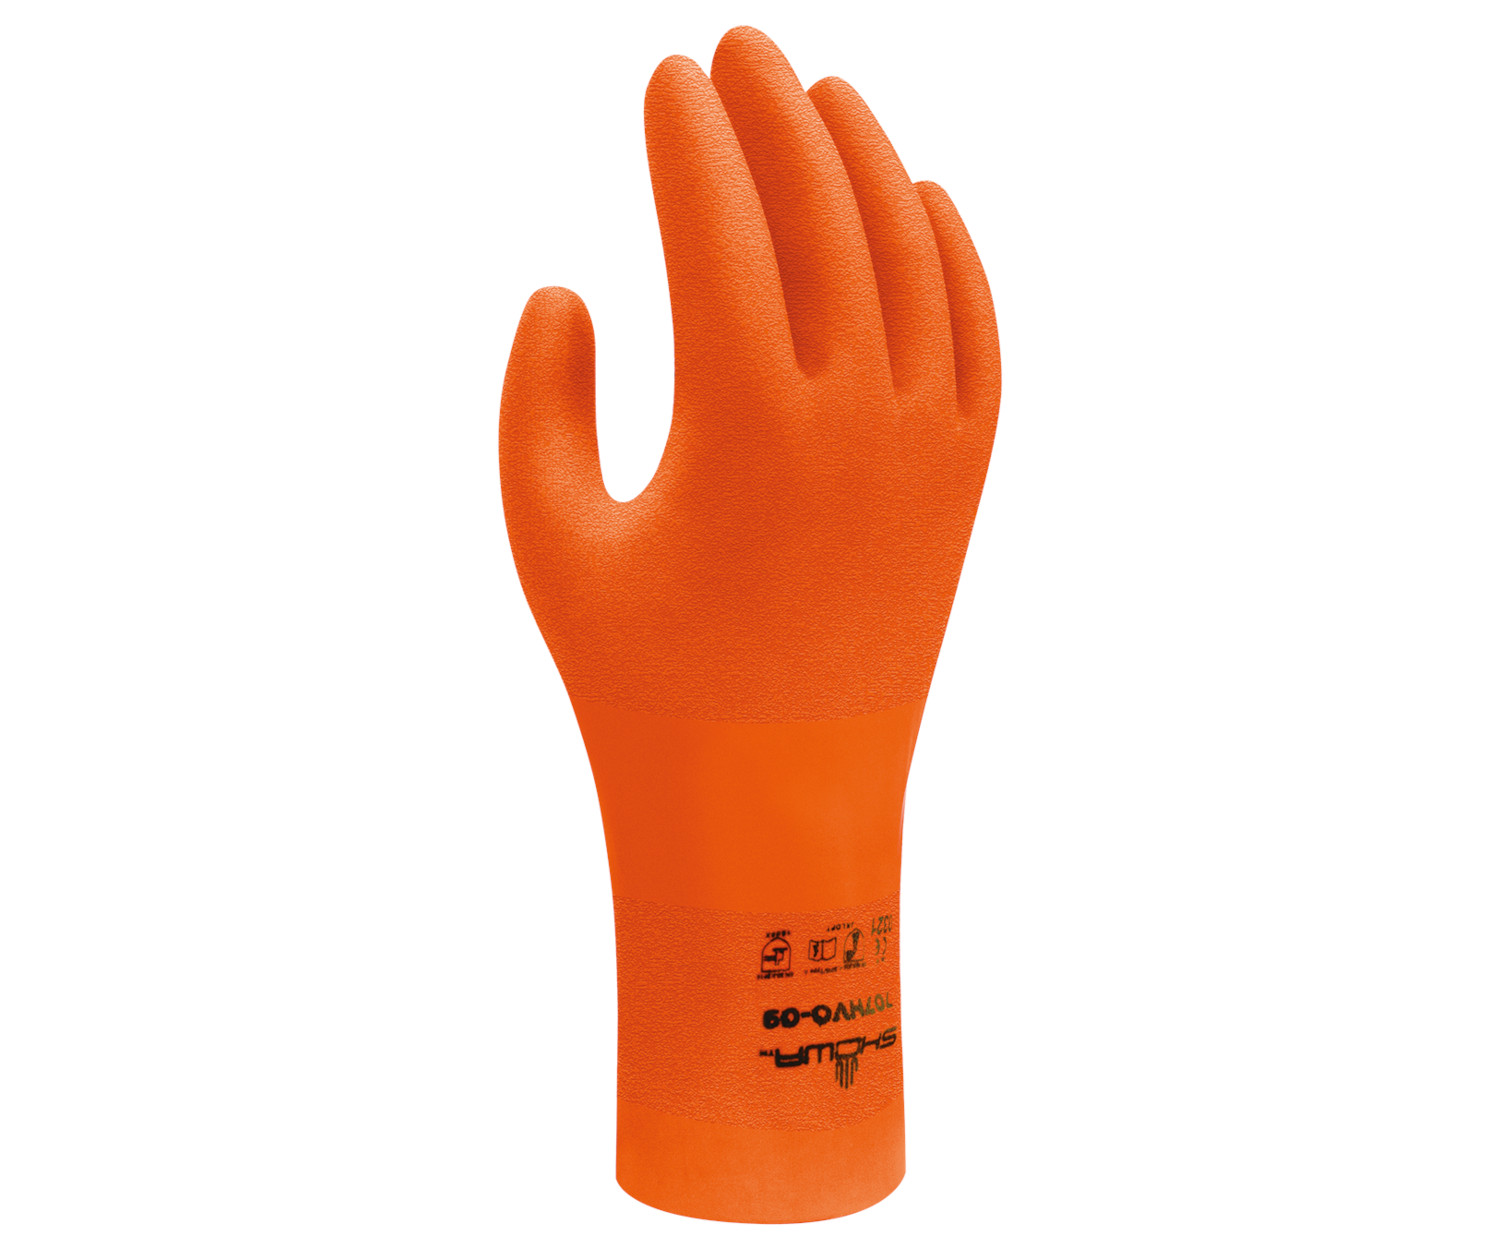 Chemikalienschutz-Handschuh SHOWA 707HVO